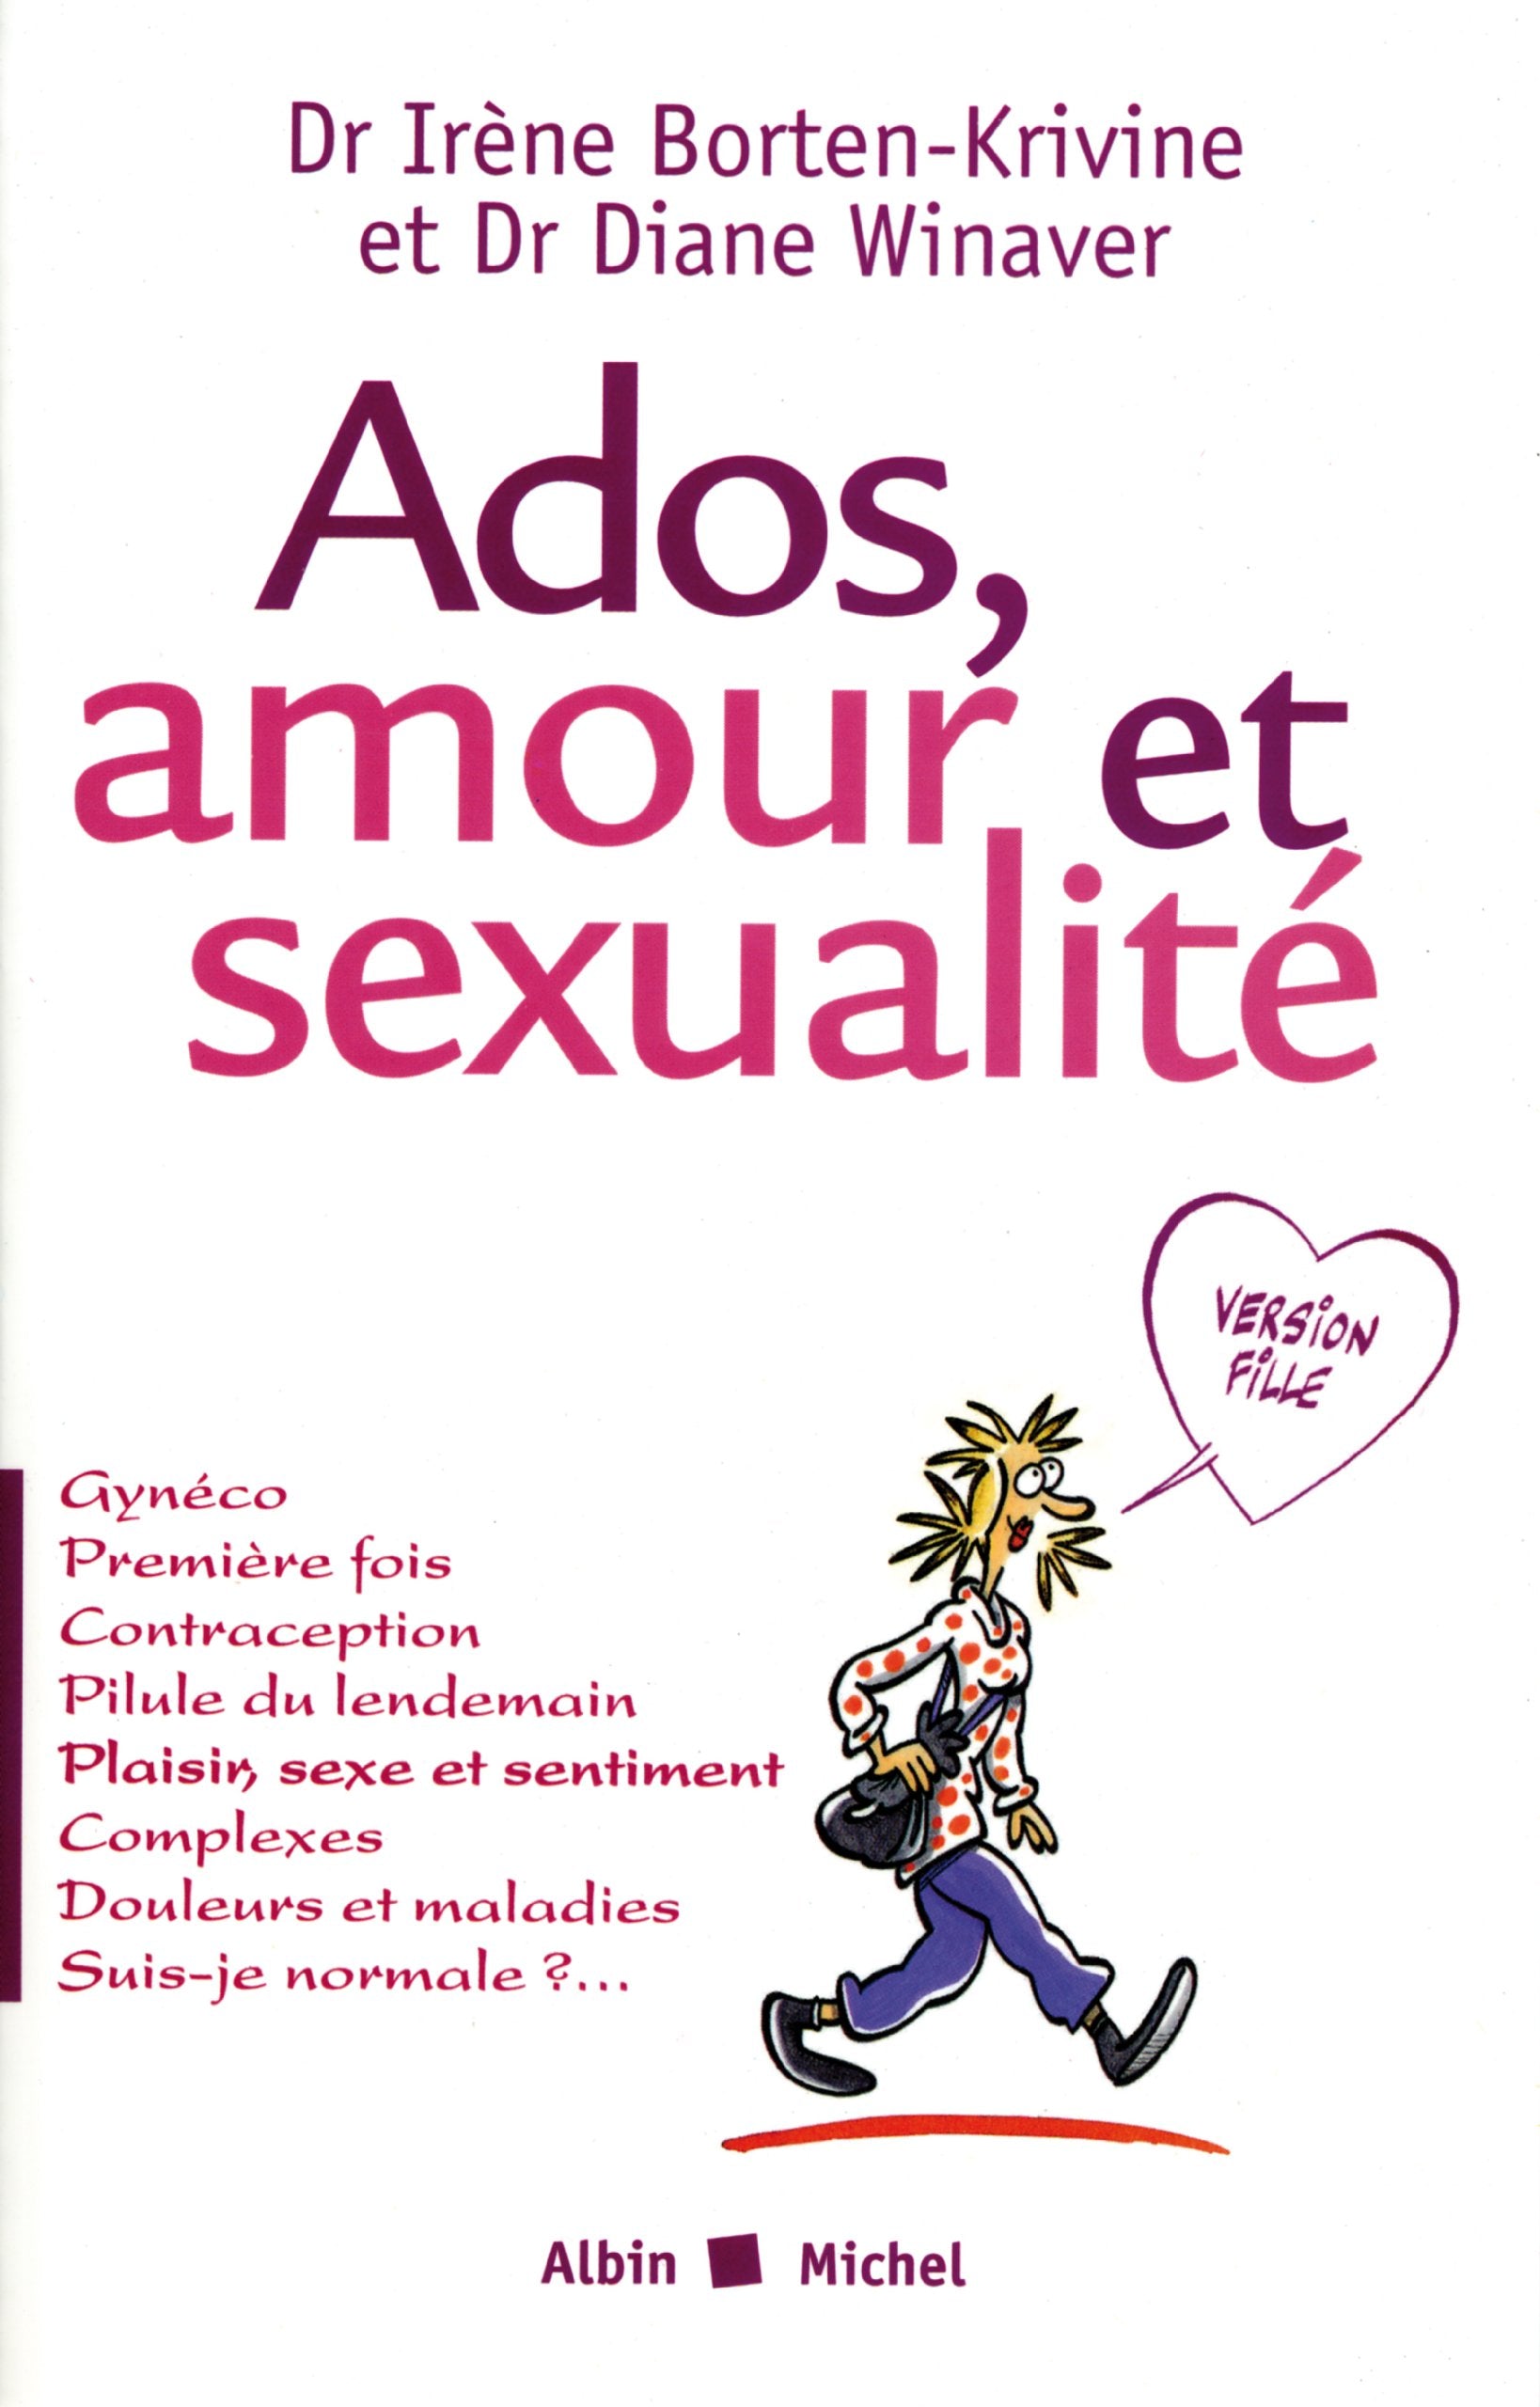 Livre ISBN 2226126120 Ados, amour et sexualité (version fille) (Dr Irène Borten-Krivine)